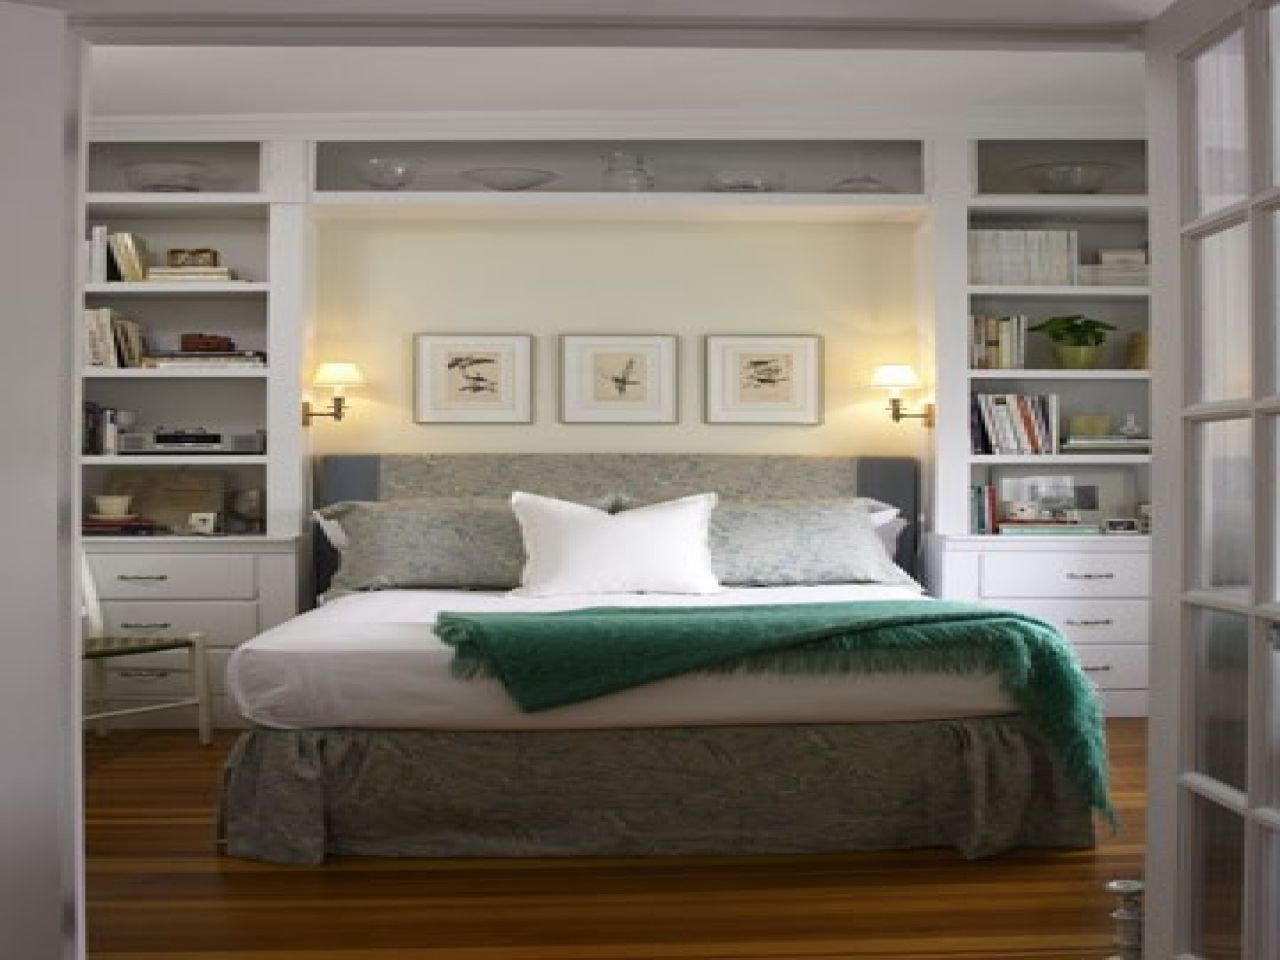 Bedroom Built In Bedroom Bookshelf Built In Shelves Around within size 1280 X 960